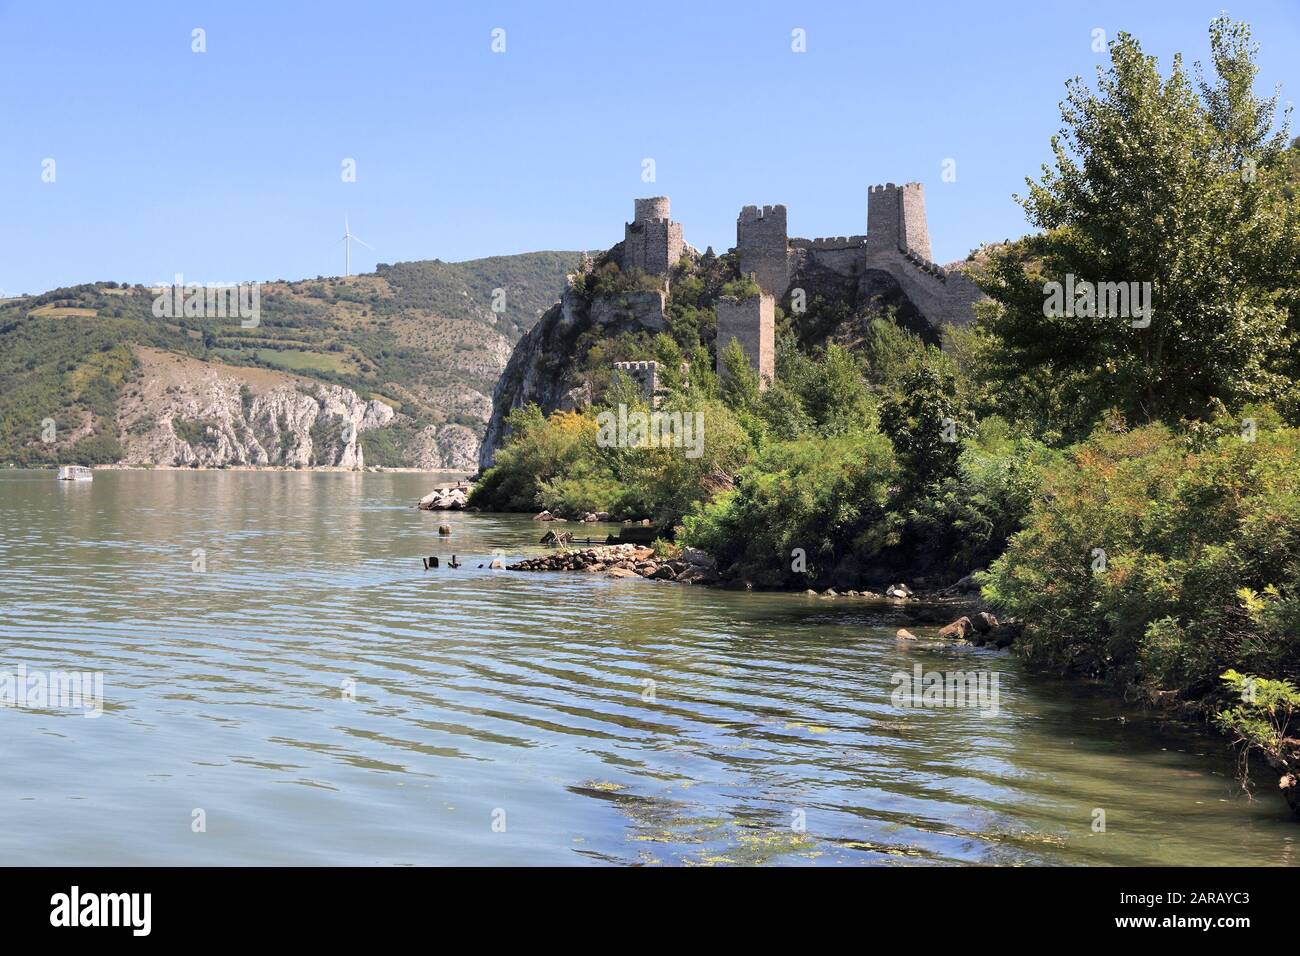 Serbia landmark. Golubac Fortress on Danube River in region of Branicevo. Stock Photo